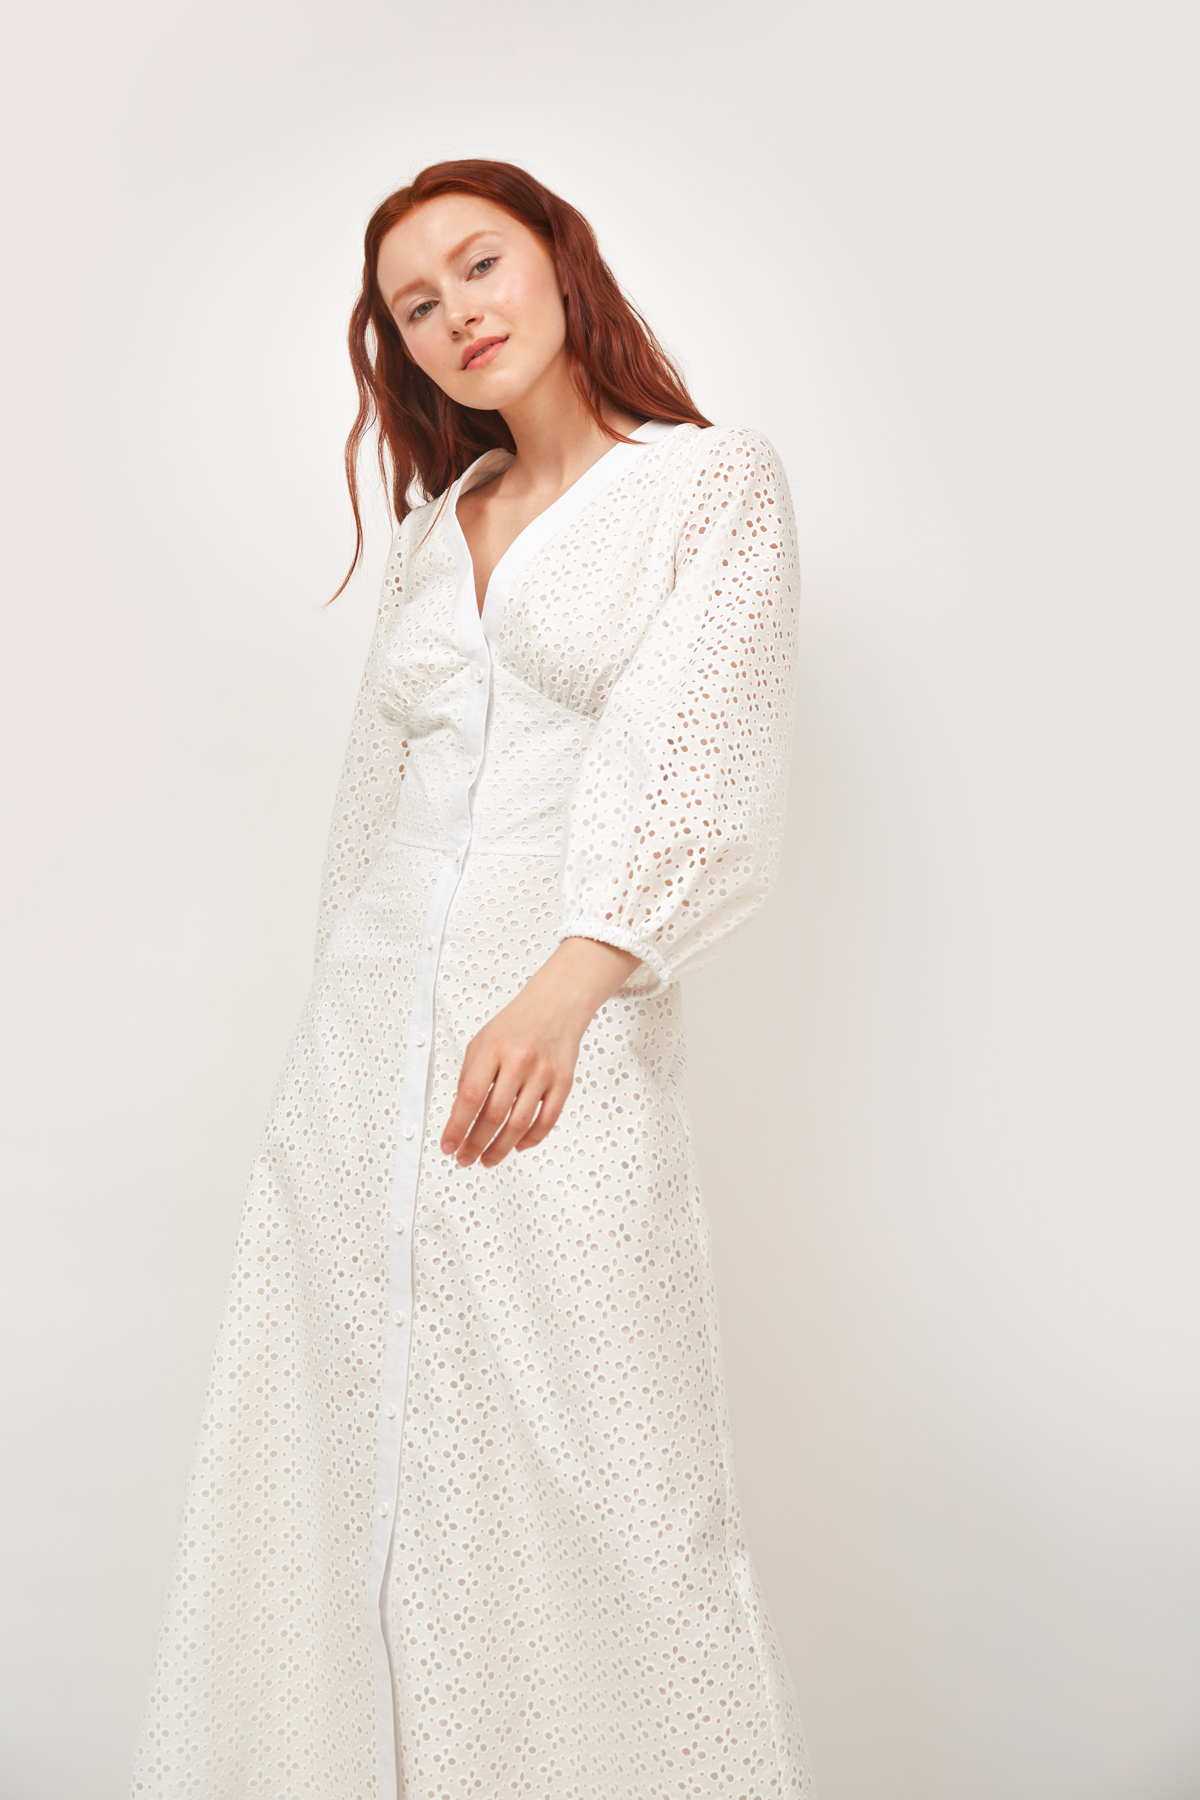 Купить белые женские платья в интернет магазине вторсырье-м.рф